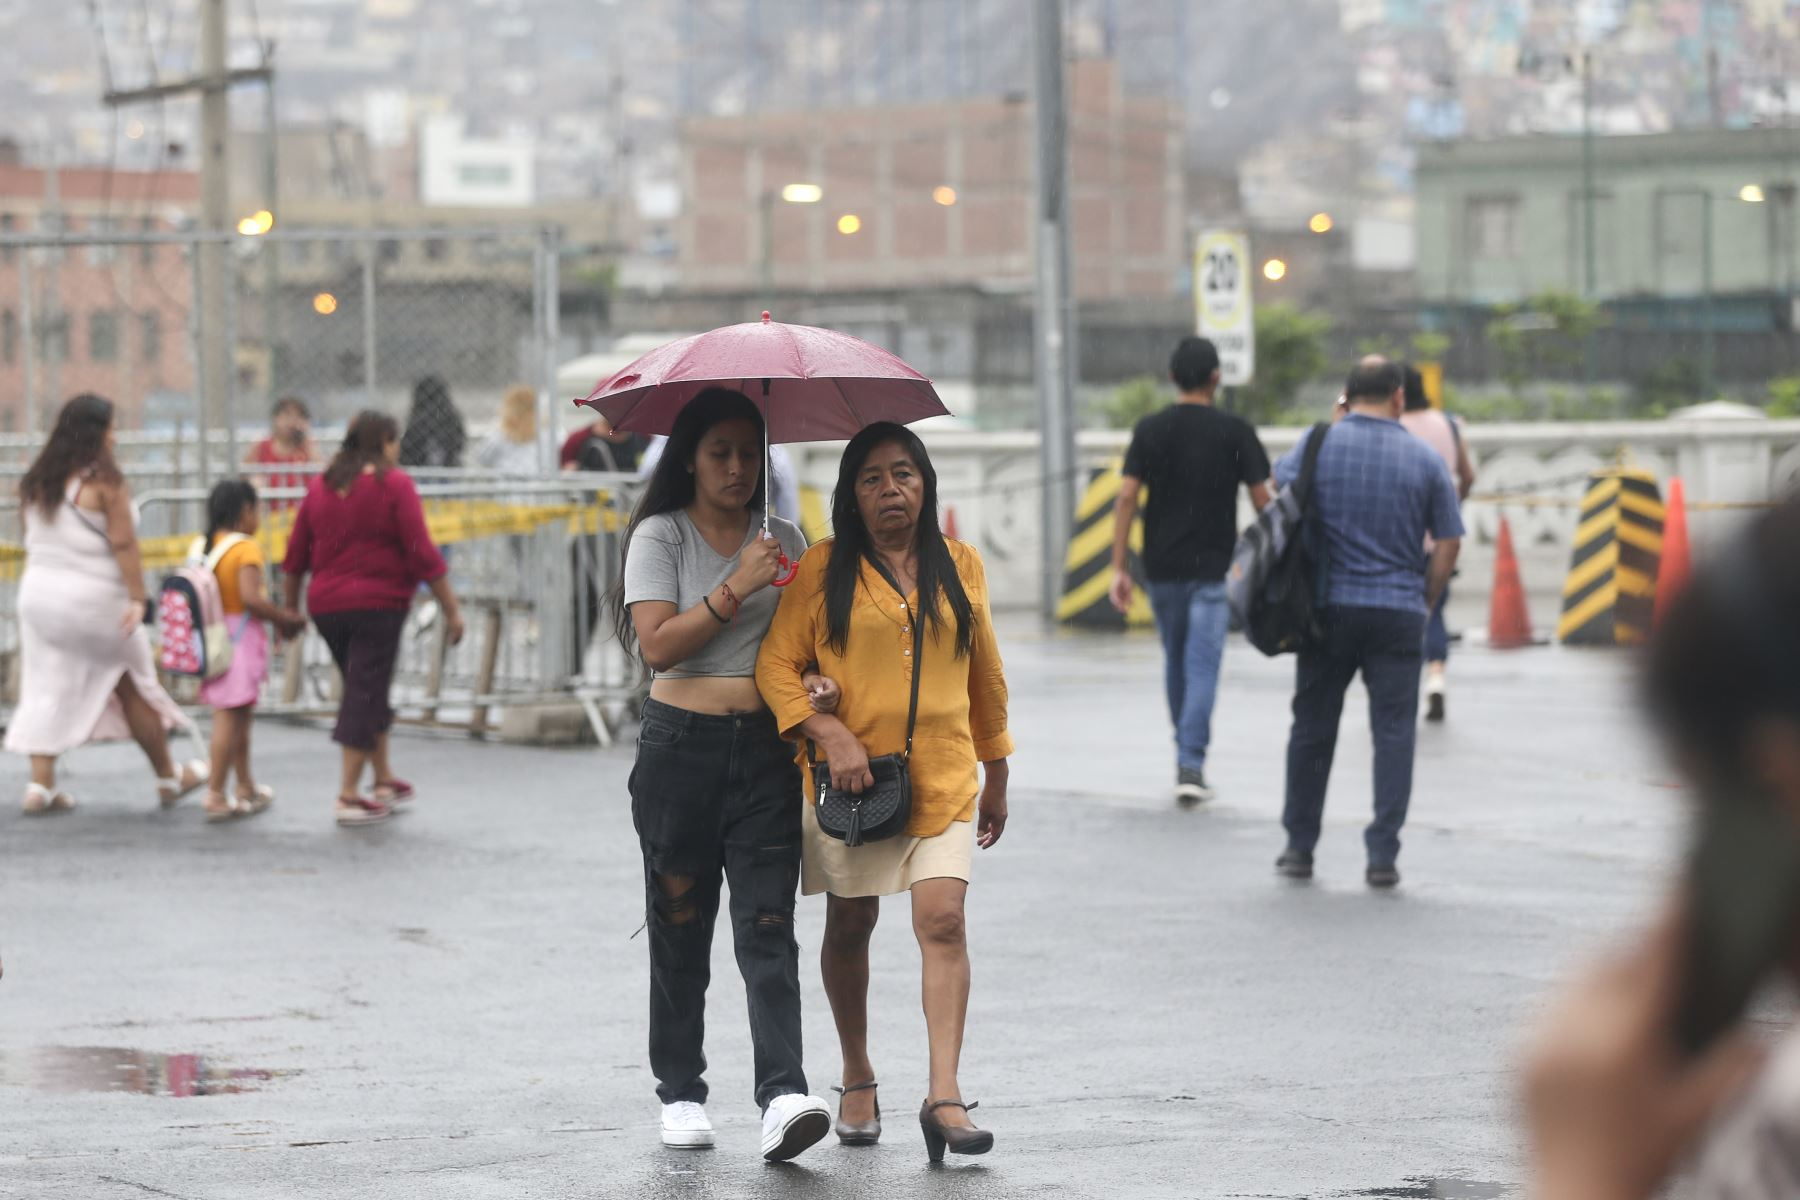 amazon, senamhi anuncia fuertes lluvias en regiones del perú: ¿cuáles serán las zonas afectadas?